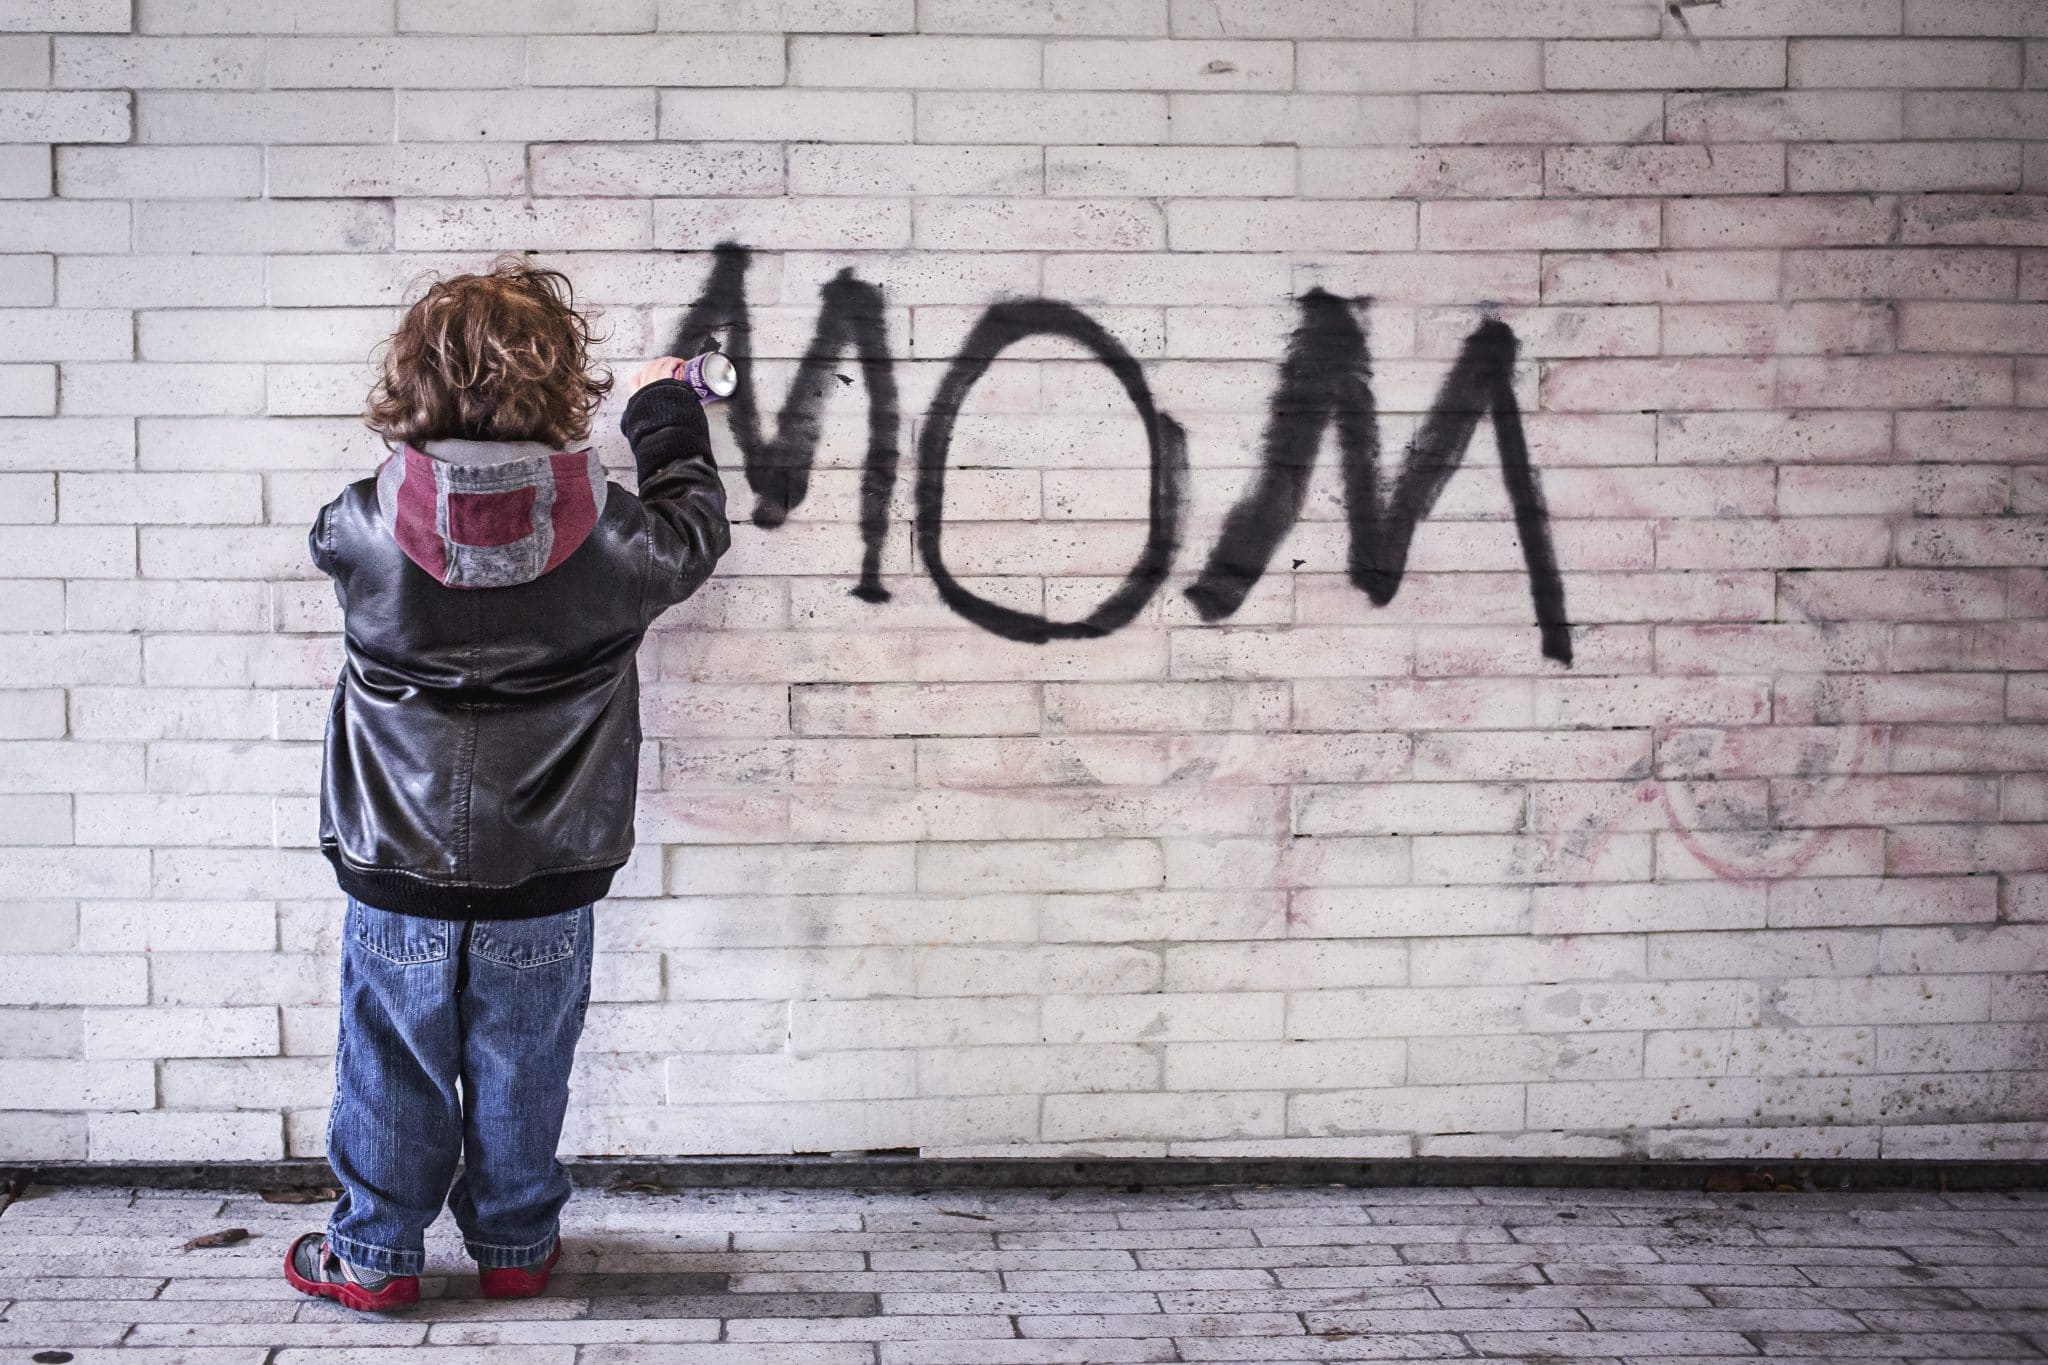 mom, graffiti, the art of